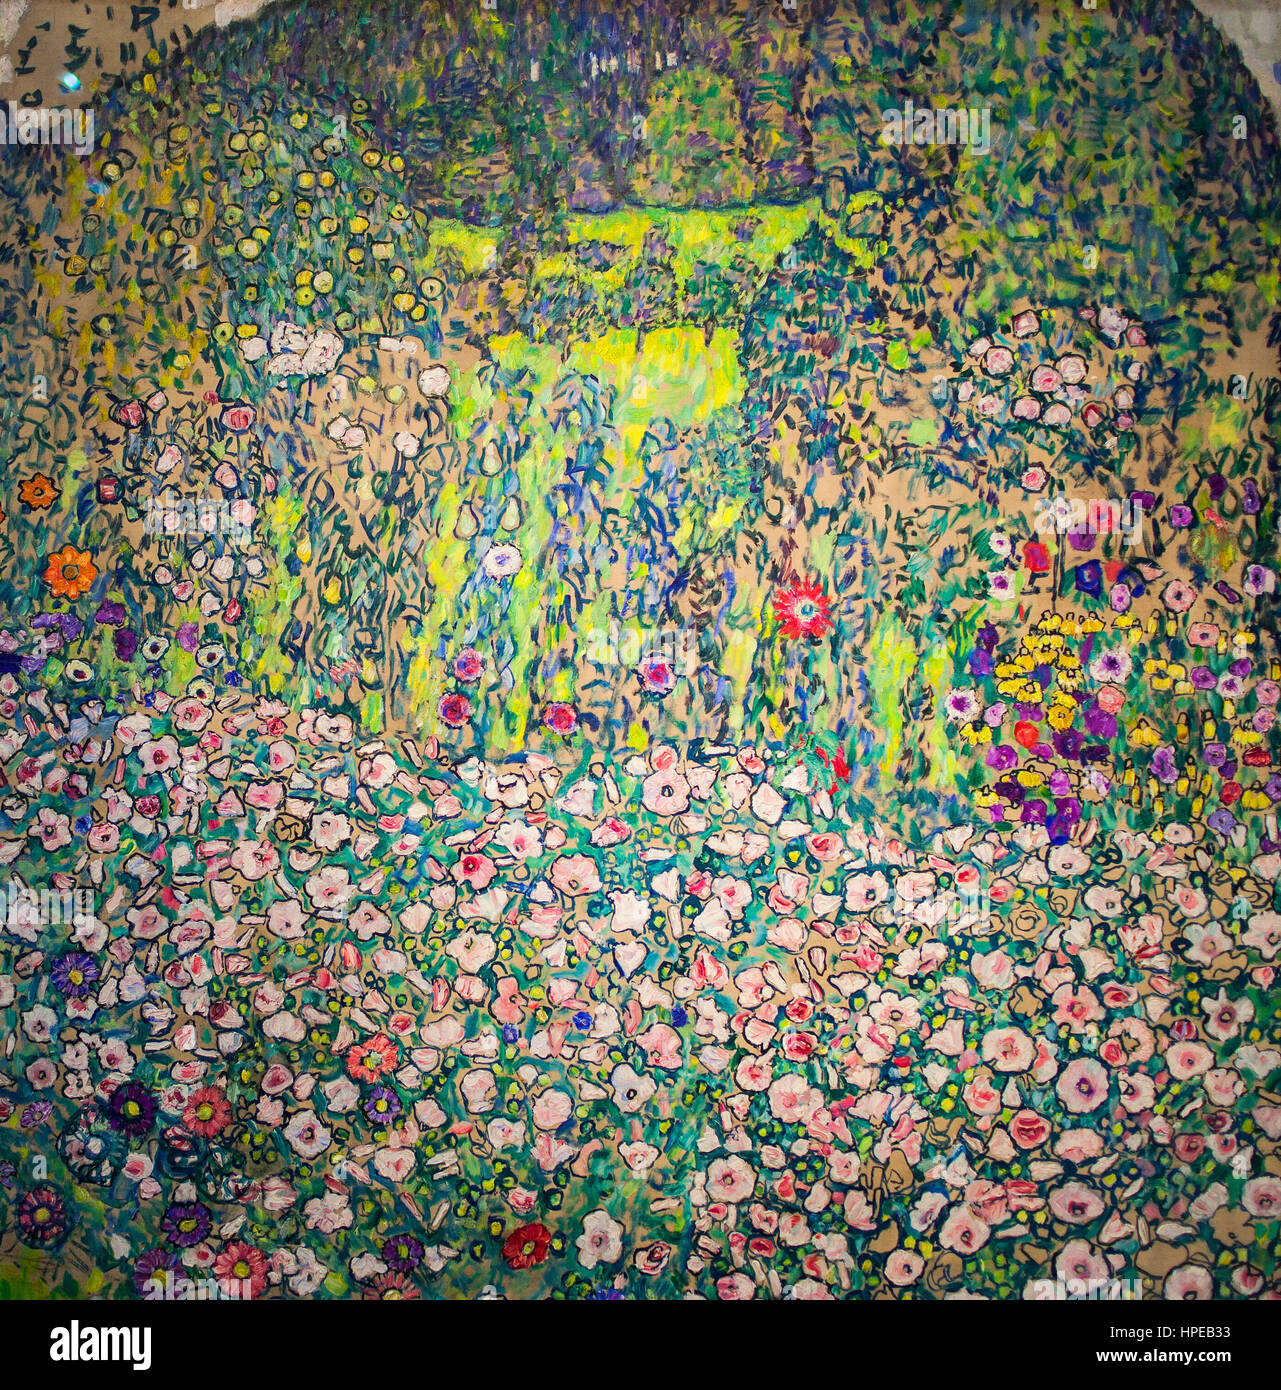 Jardin paysage avec au sommet arrondi,Gustav Klimt,Leopold Museum, Vienne, Autriche, Europe Banque D'Images